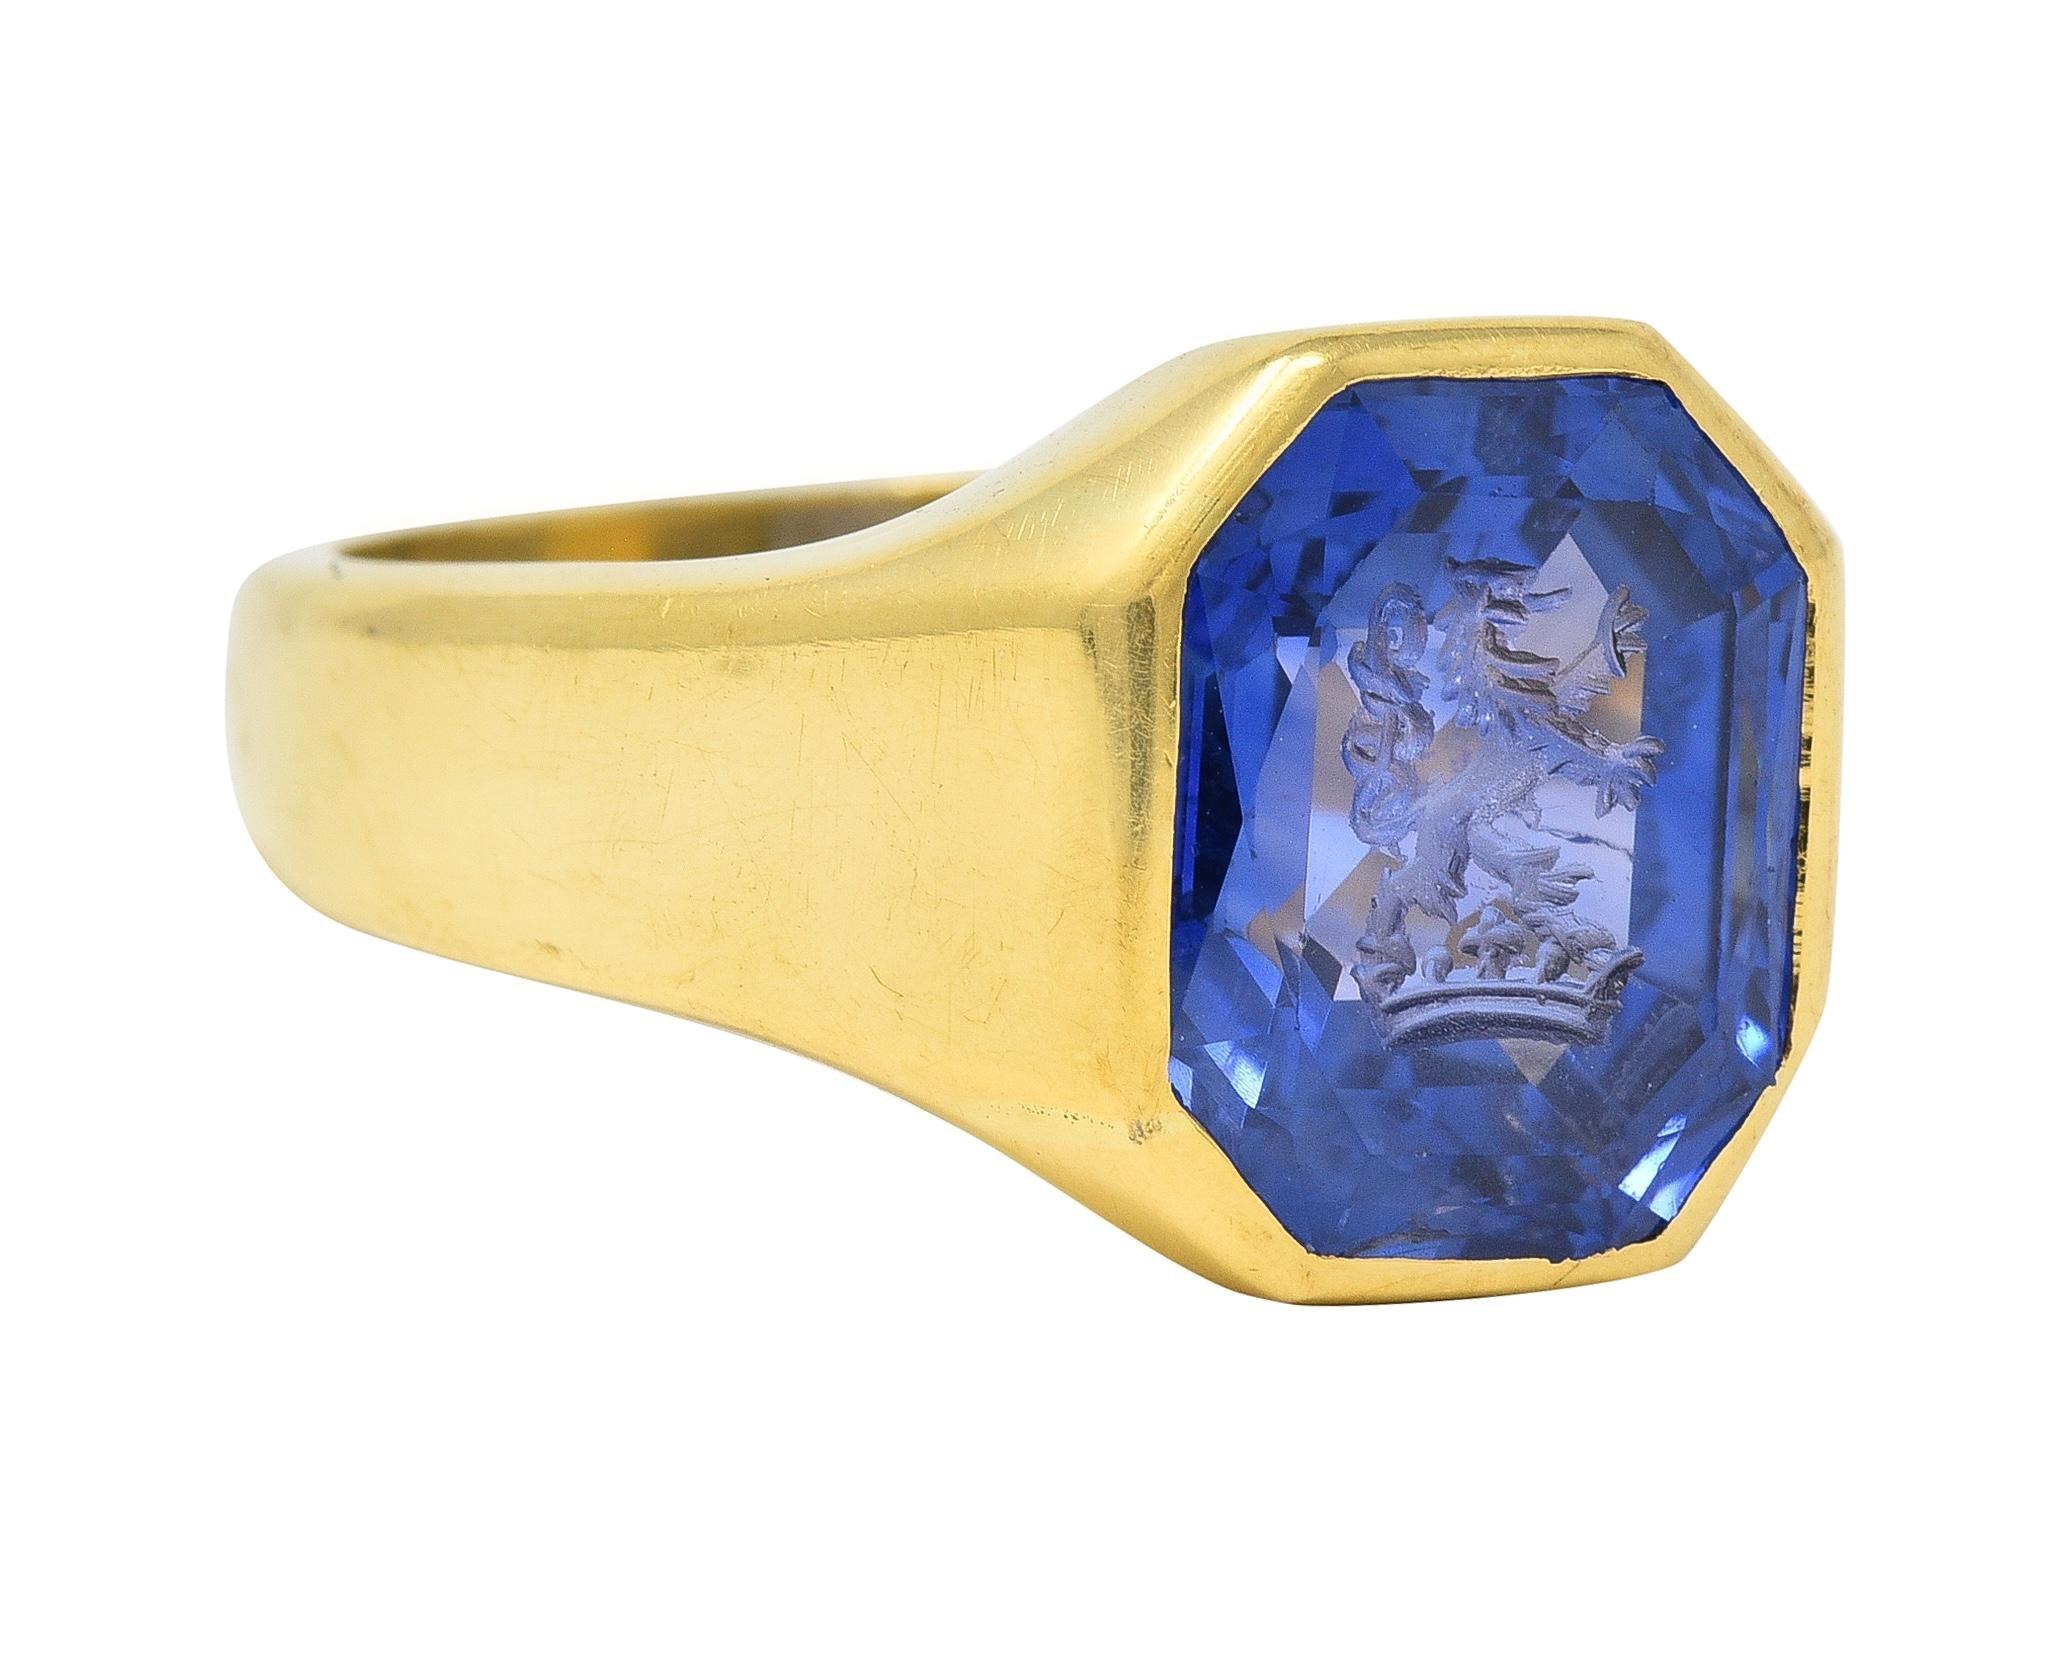 In der Mitte ein achteckiger Saphir im Mischschliff mit einem Gewicht von 2,86 Karat - von transparenter blauer Farbe
Natürlicher srilankischer Ursprung ohne Hinweise auf eine Wärmebehandlung
Geschnitzt mit einer Intaglio eines heraldischen Löwen